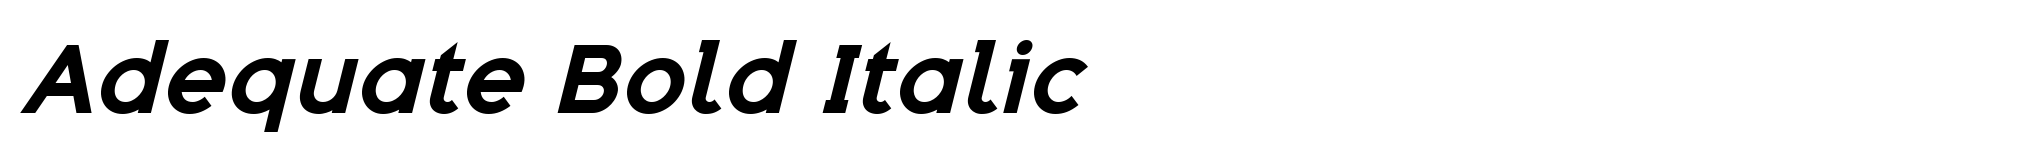 Adequate Bold Italic image